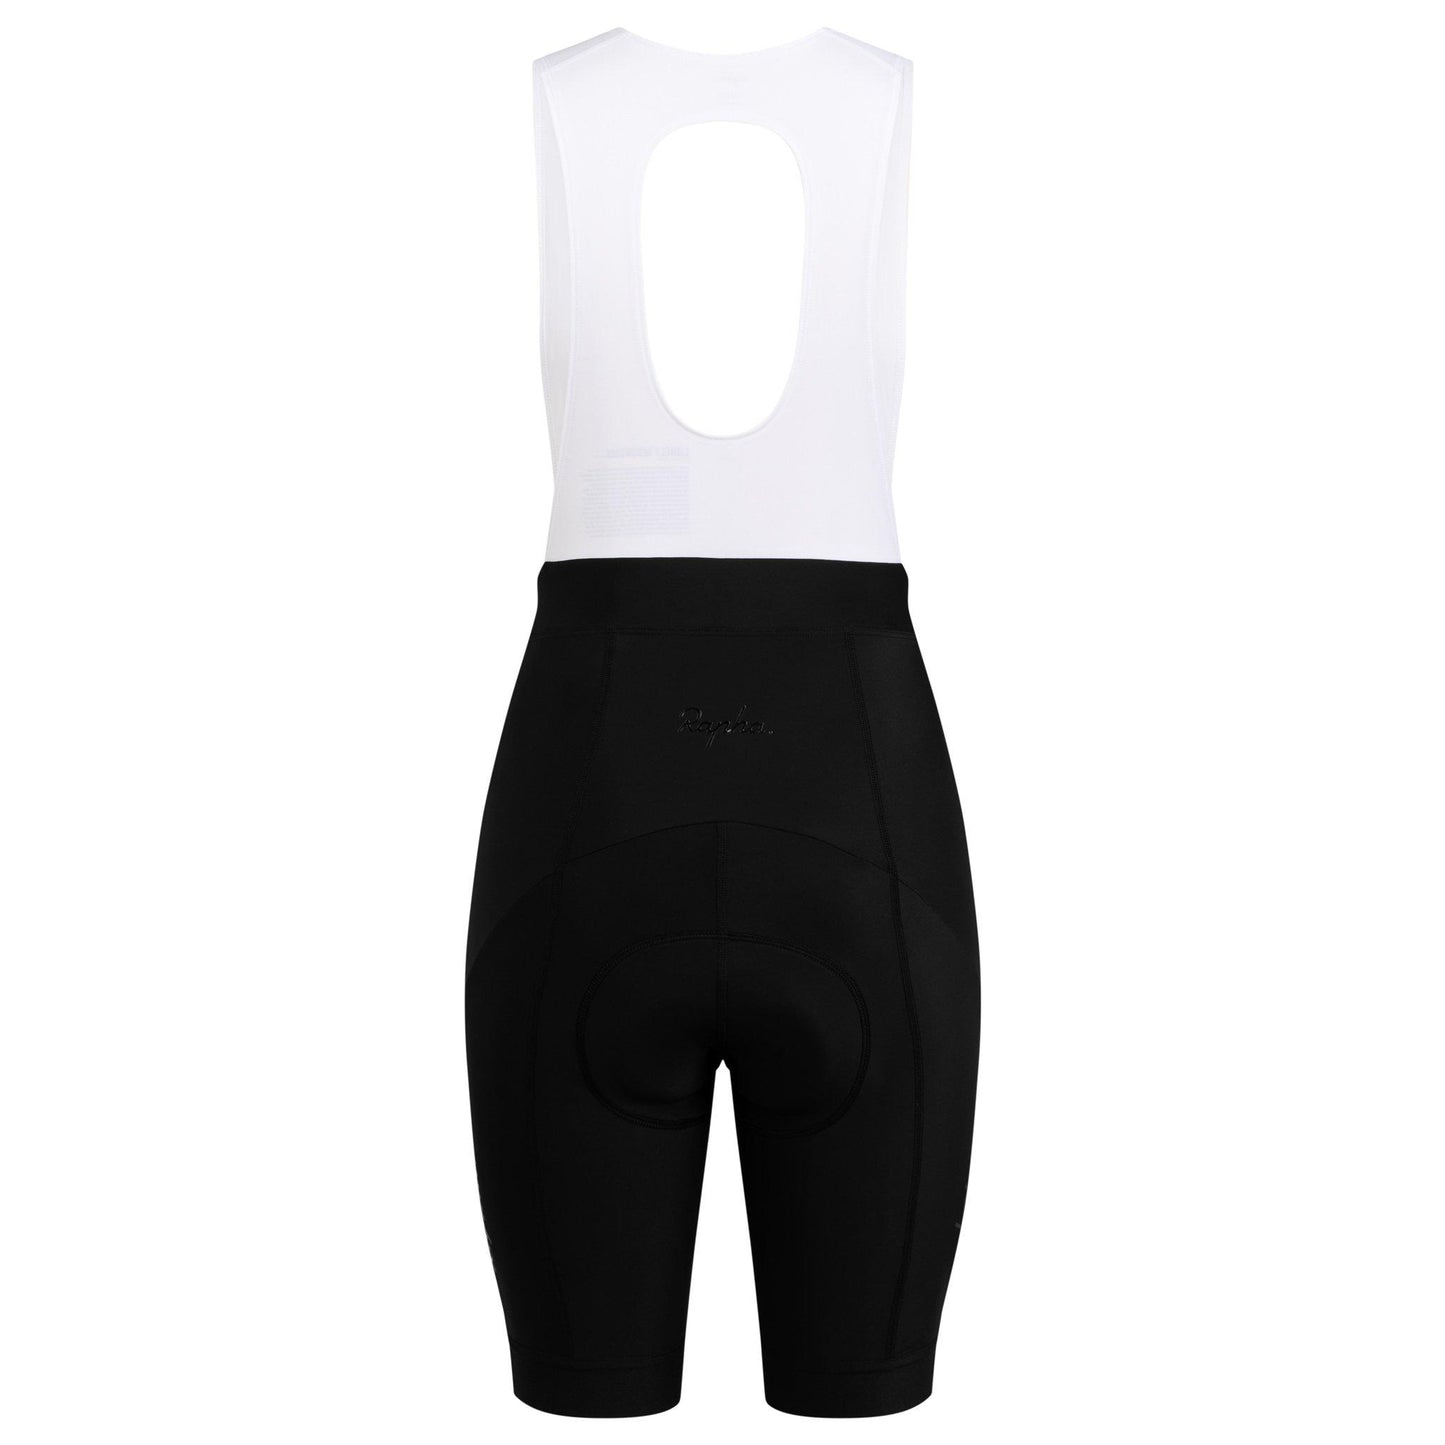 Rapha Women's Core Bib Shorts - Black/White